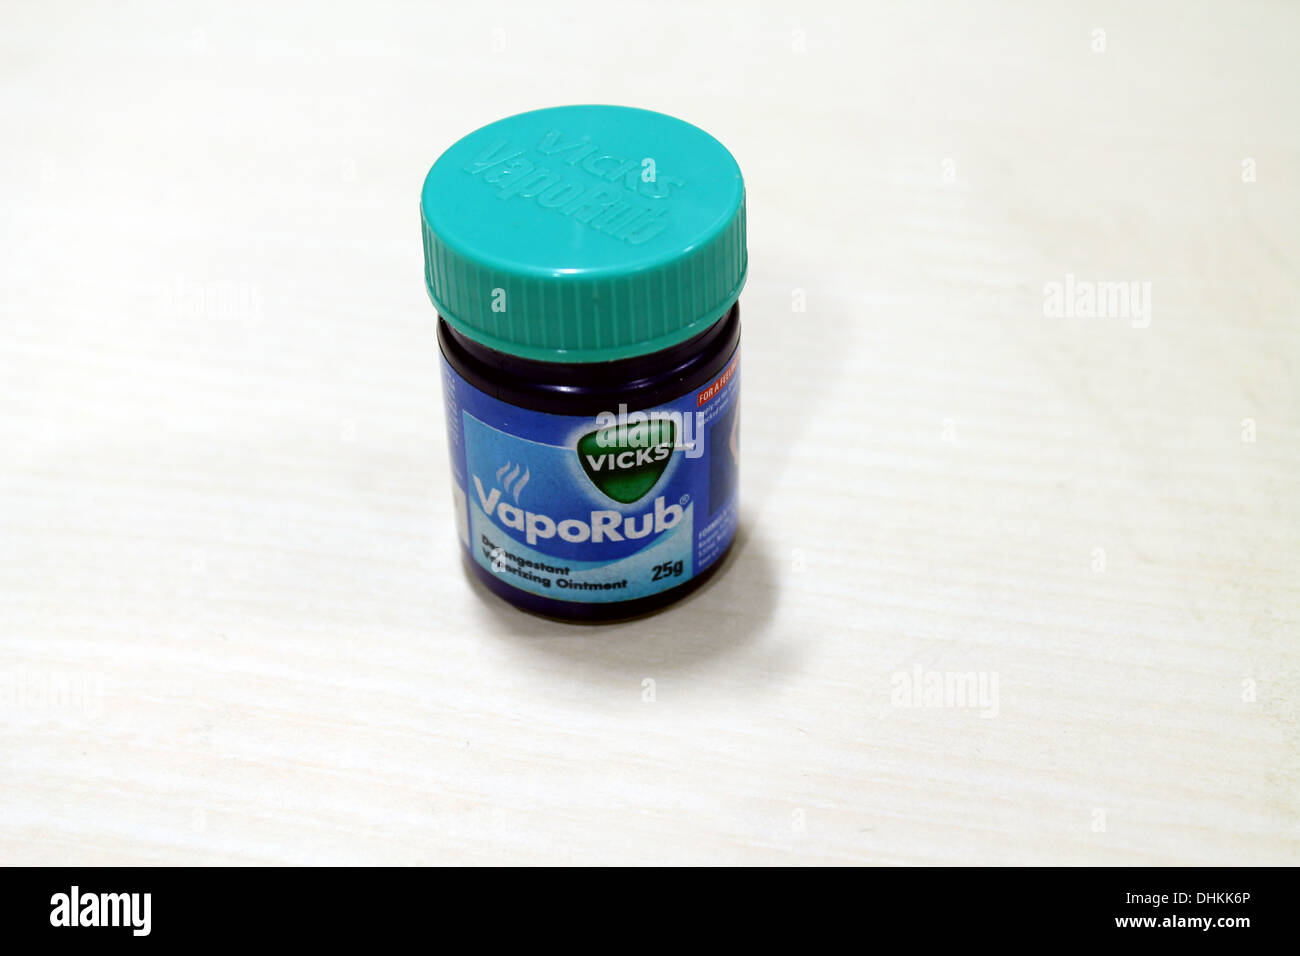 Vicks Vaporub, a balm for cough, cold, headache etc Stock Photo